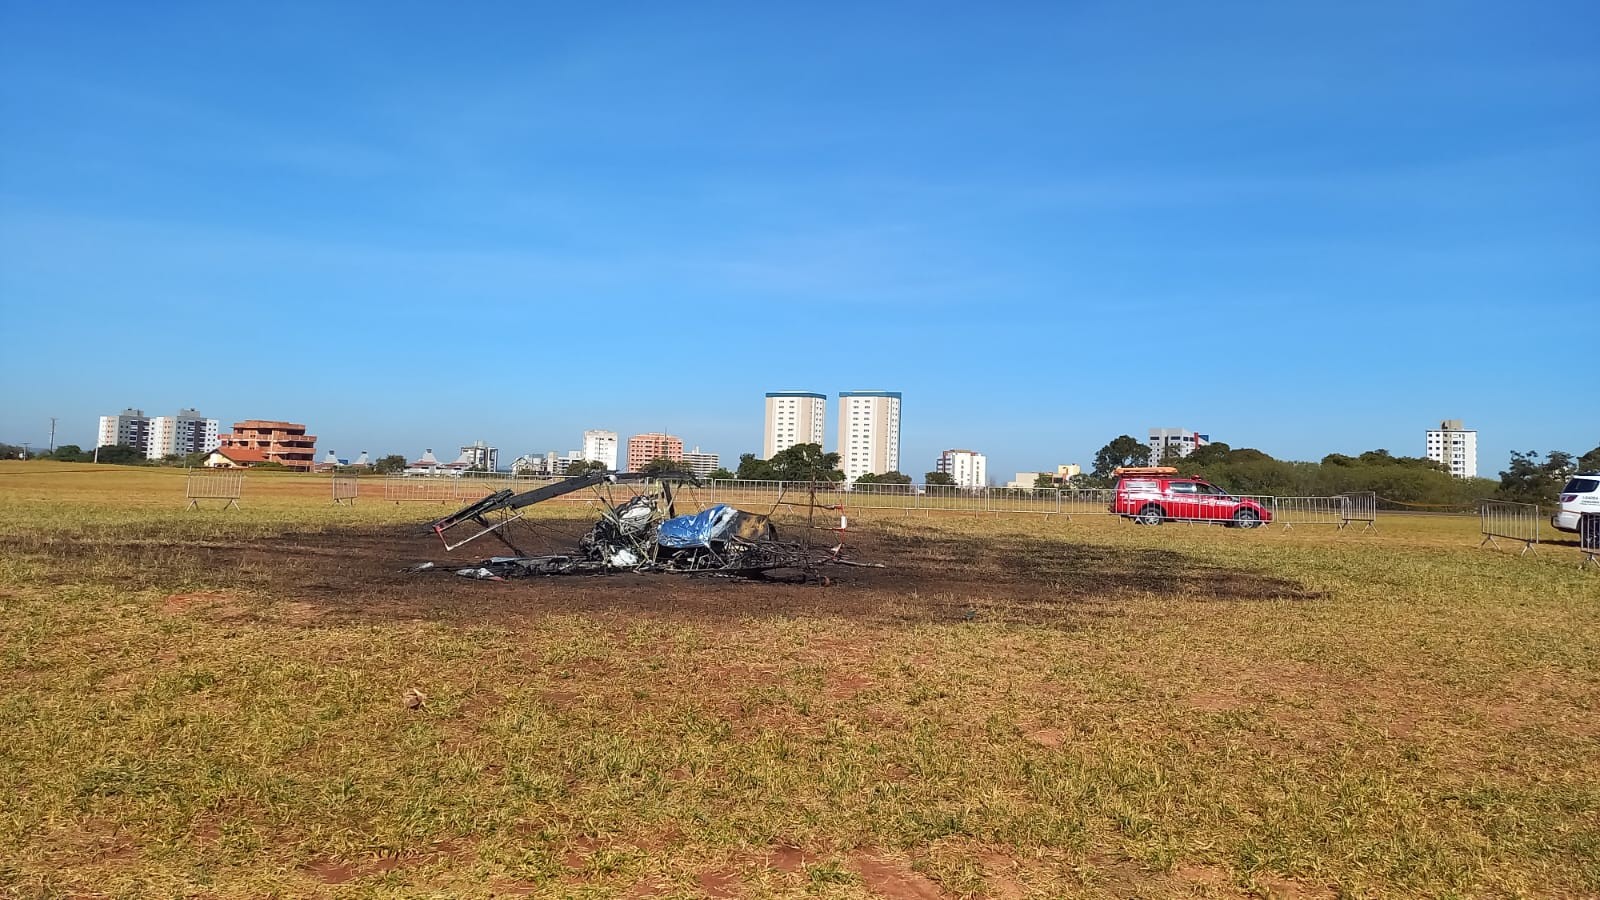 Piloto que morreu após queda de avião publicou vídeo agradecendo participação em evento pouco antes de acidente: 'Missão cumprida'